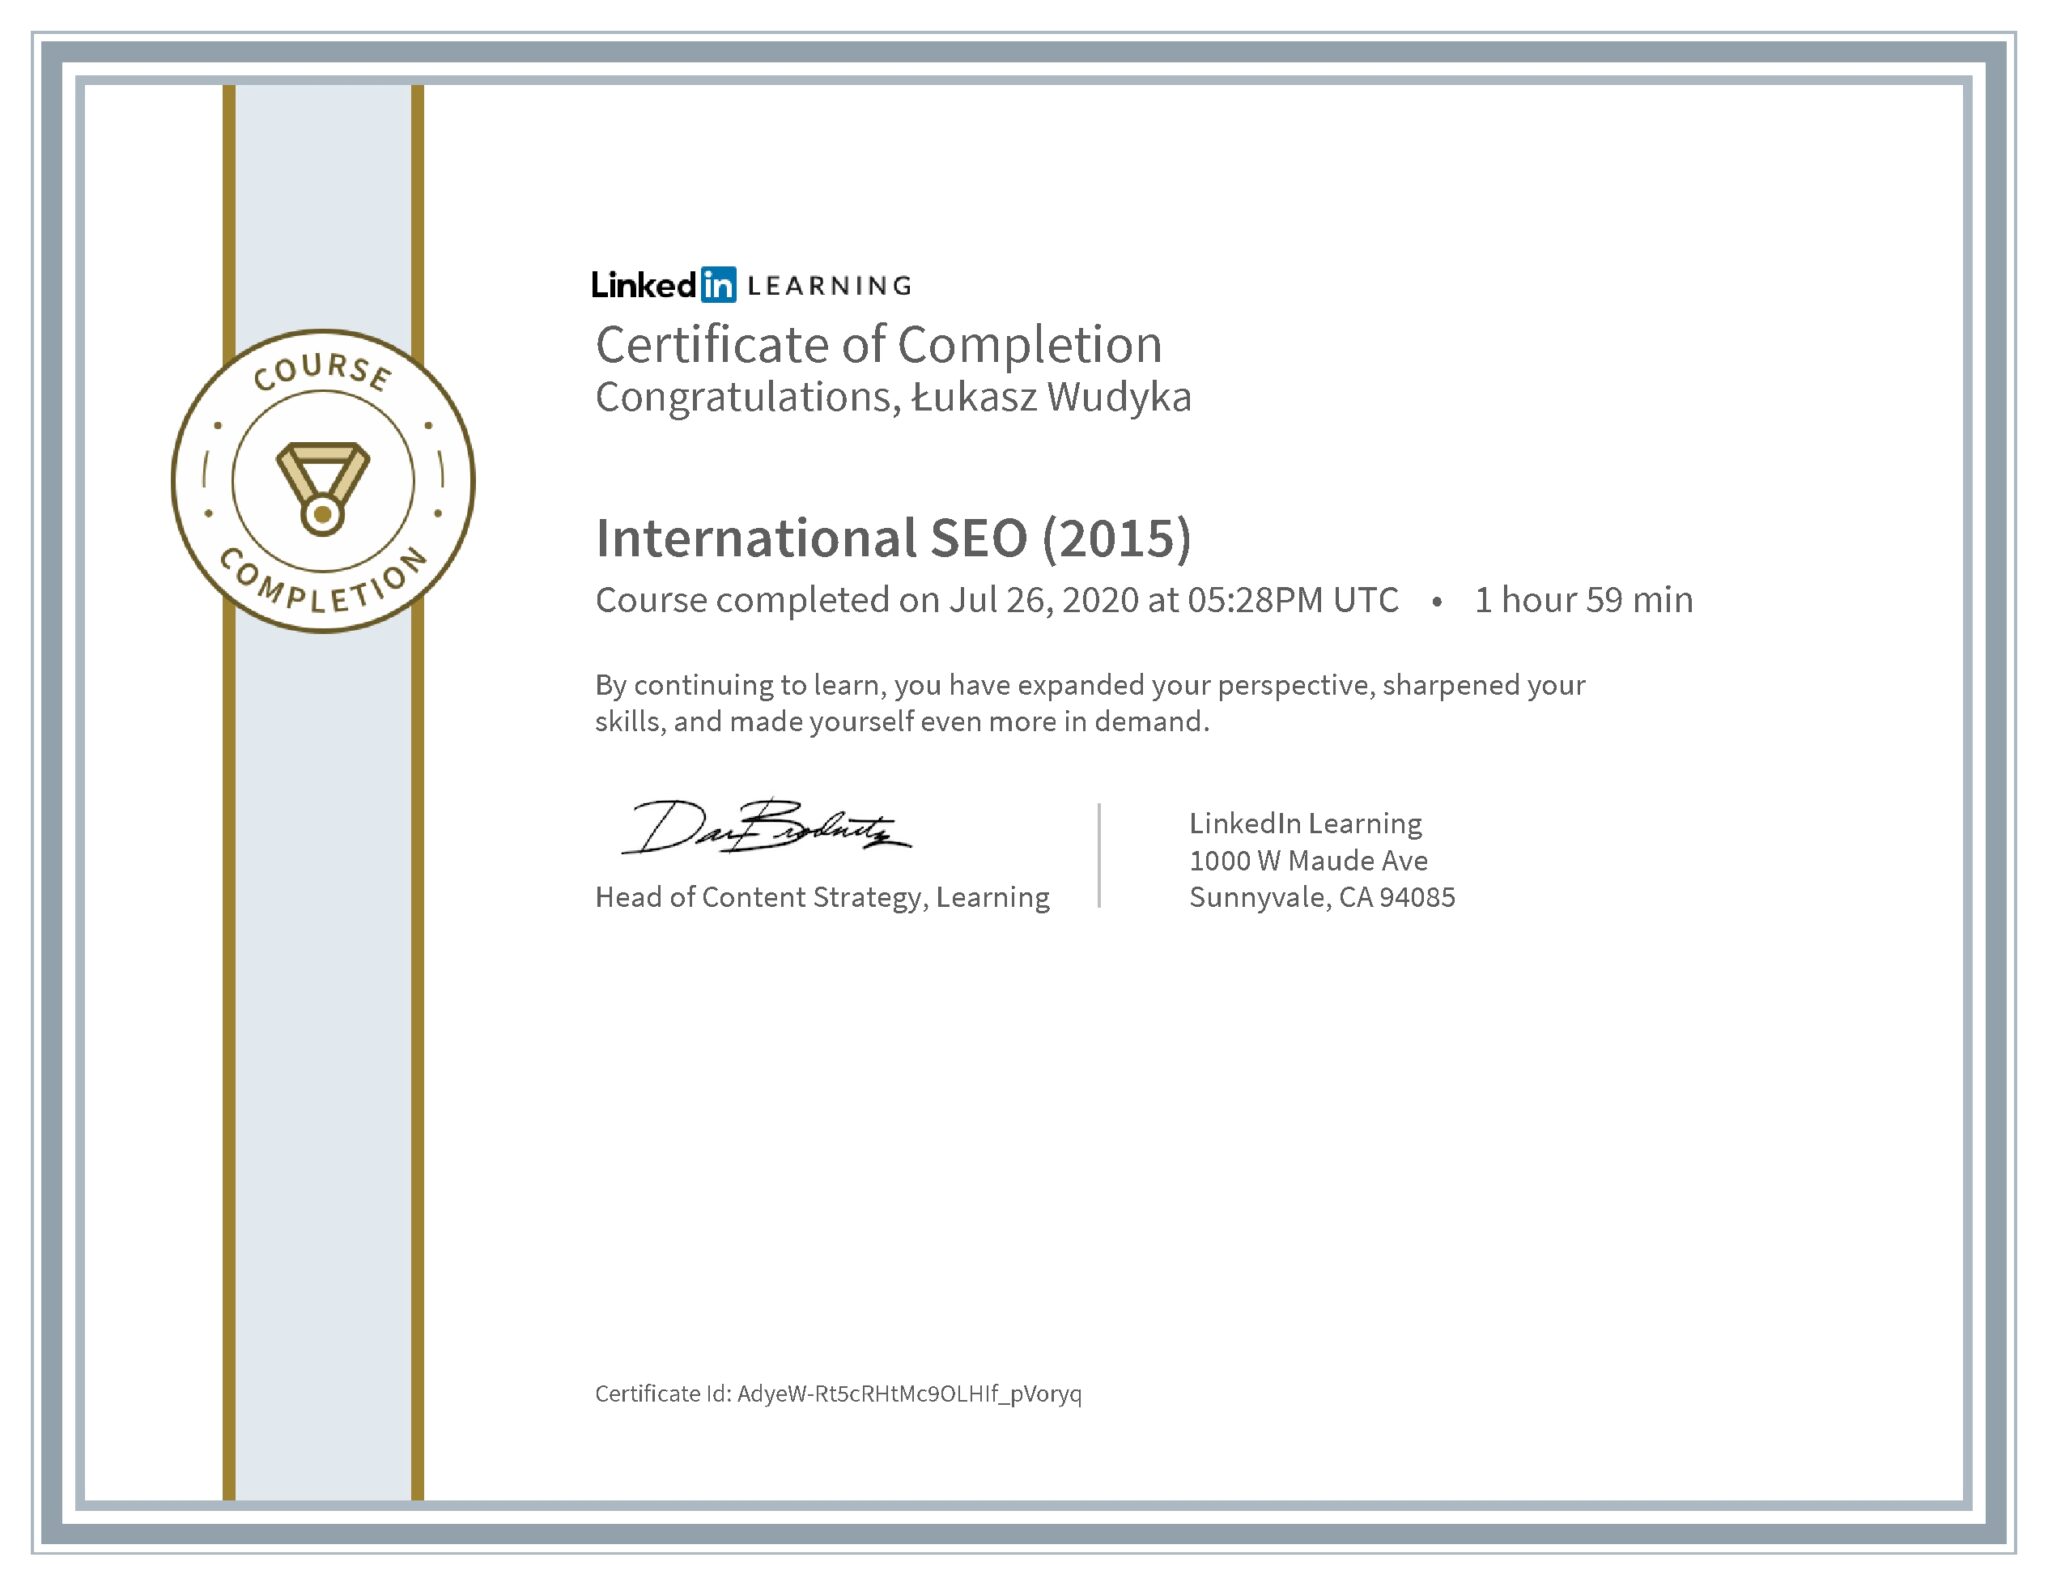 Łukasz Wudyka certyfikat LinkedIn International SEO (2015)